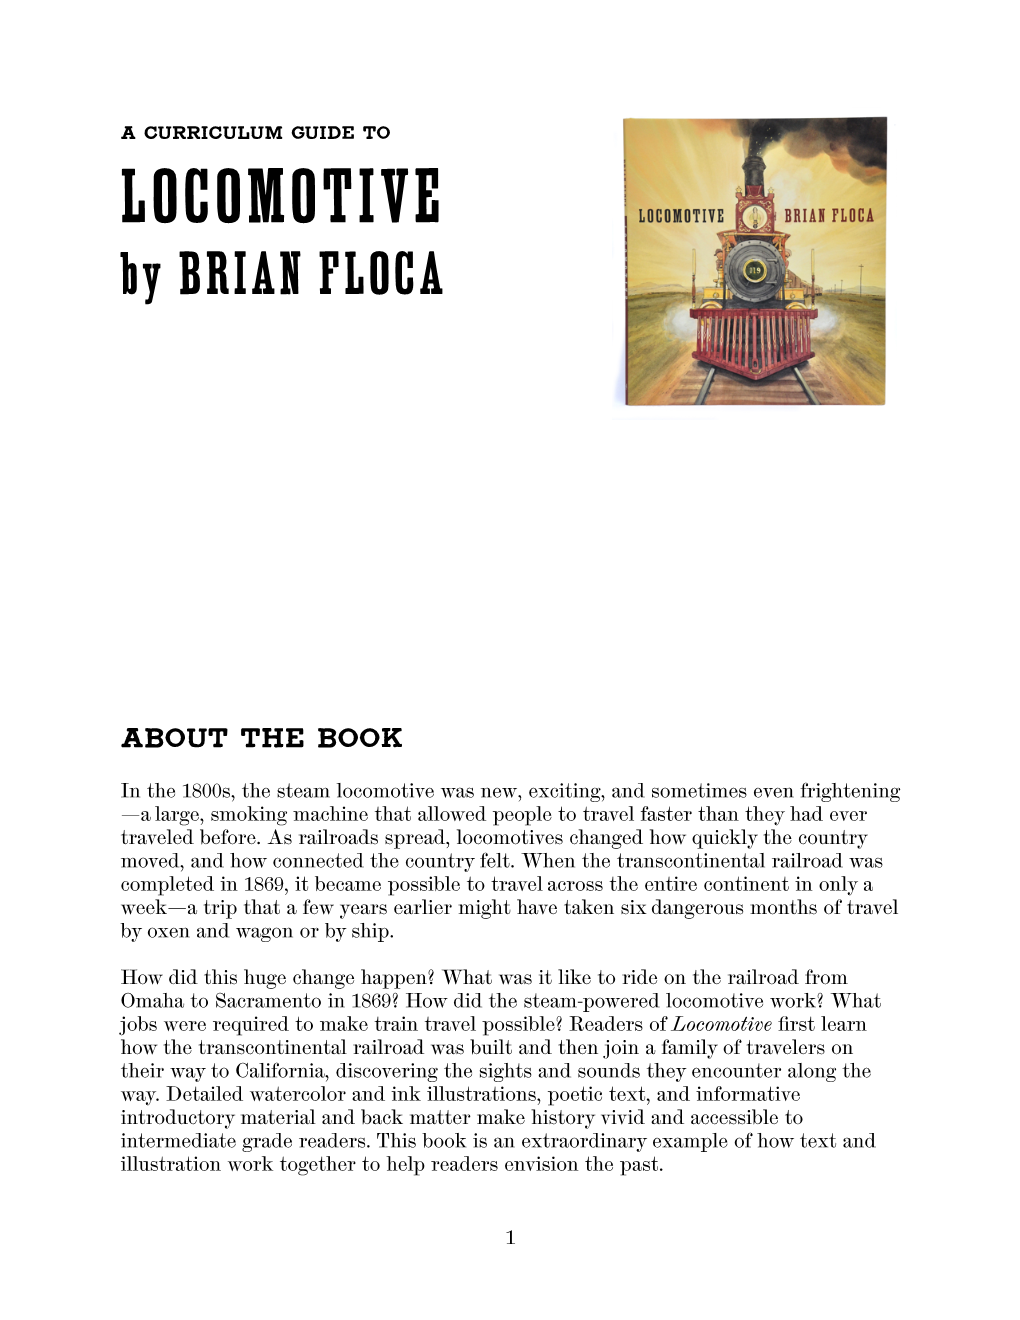 Locomotive Curriculum Guide